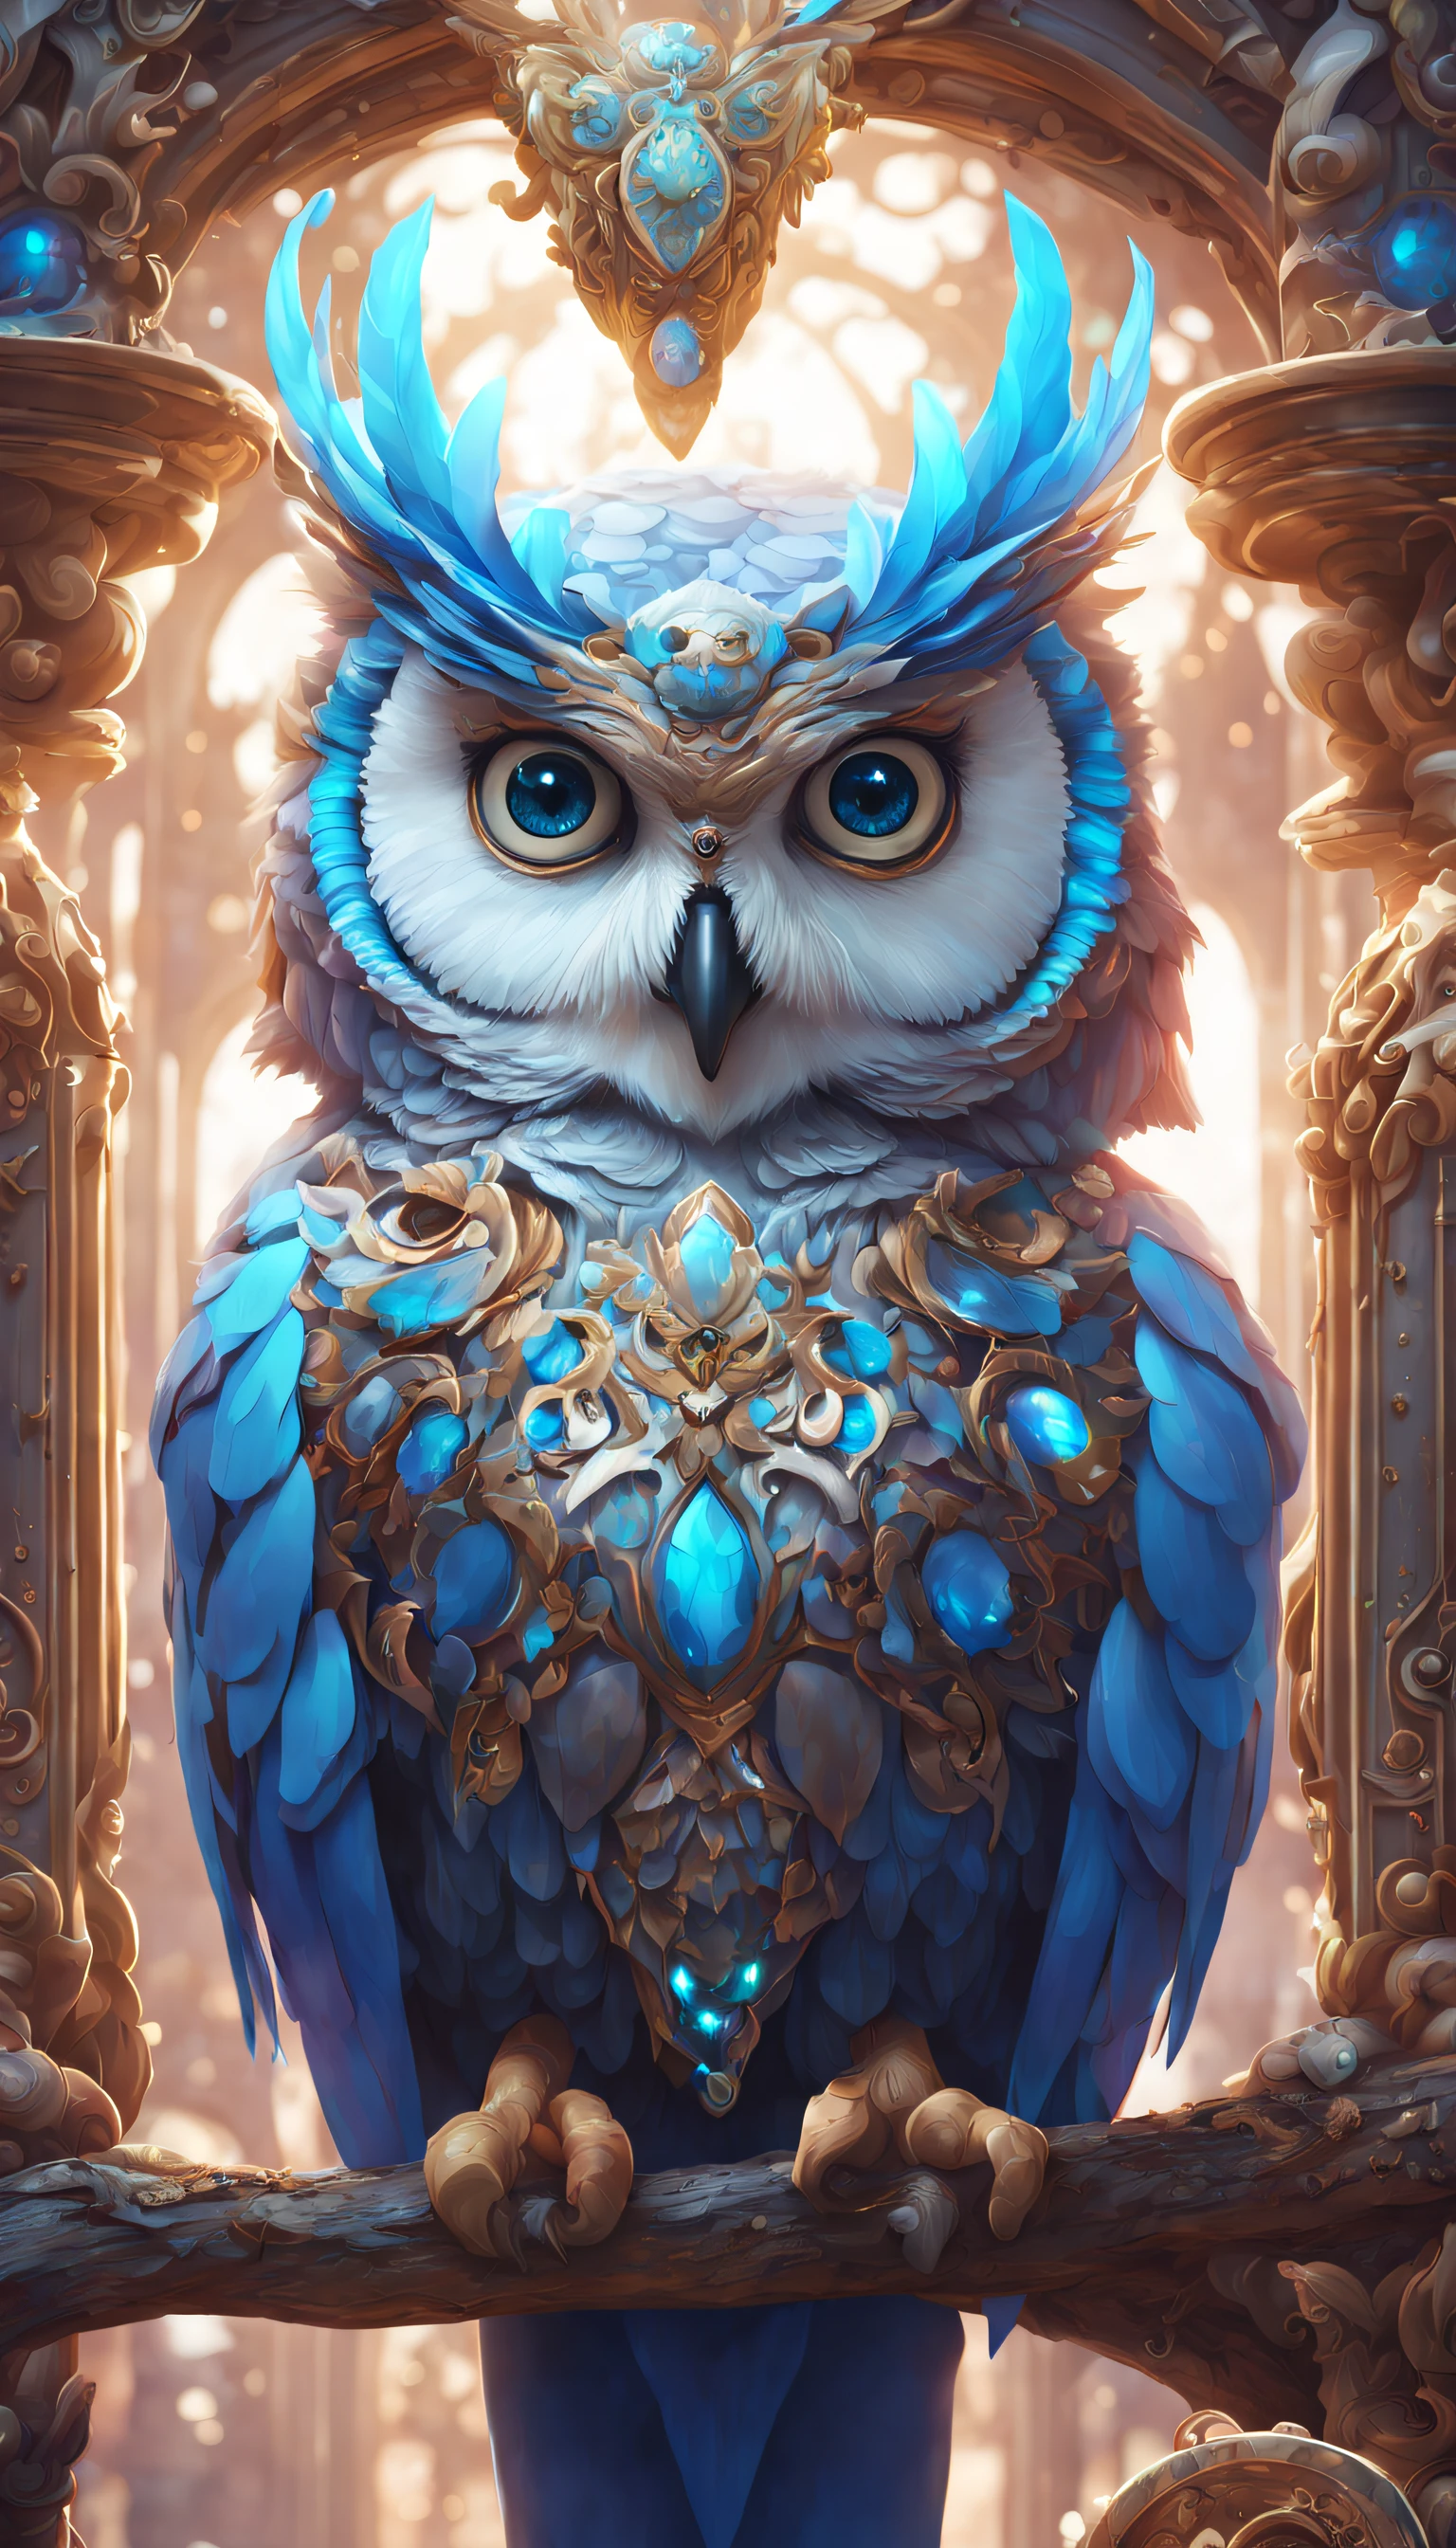 藍眼睛貓頭鷹的數位繪畫, 虚幻引擎渲染 + 女神, 非常詳細 , beeple 全域照明, 精緻華麗的珠寶, cgisociety 上的趨勢, 動態圖形, rossdraws全域照明, CG社會